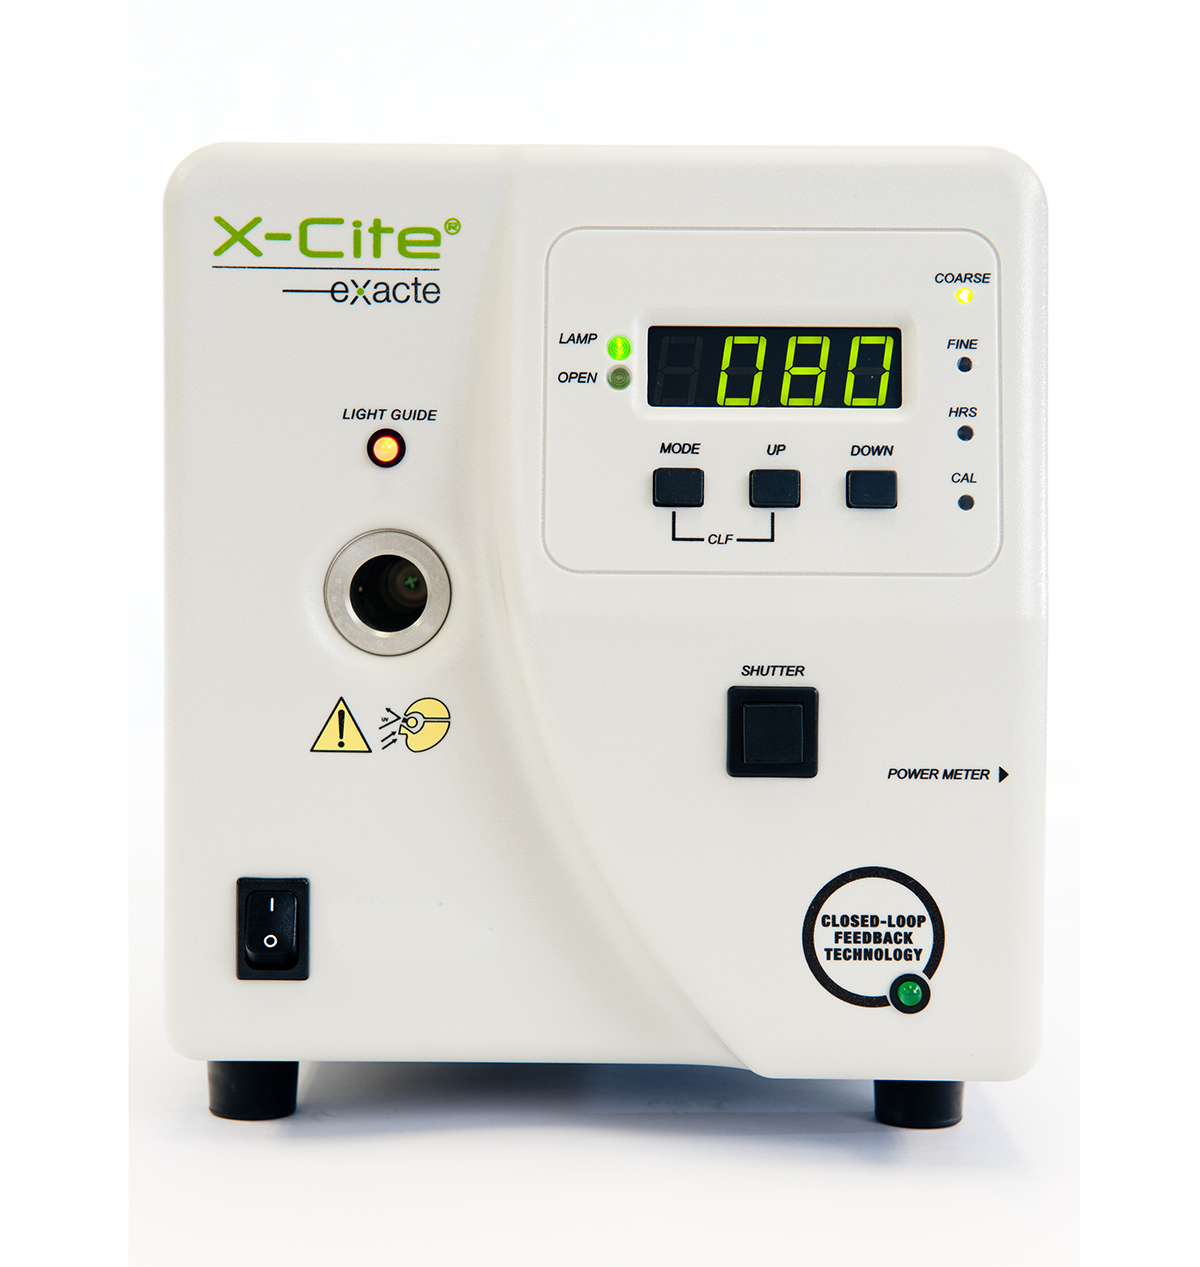 X-Cite exacte超稳定荧光照明系统